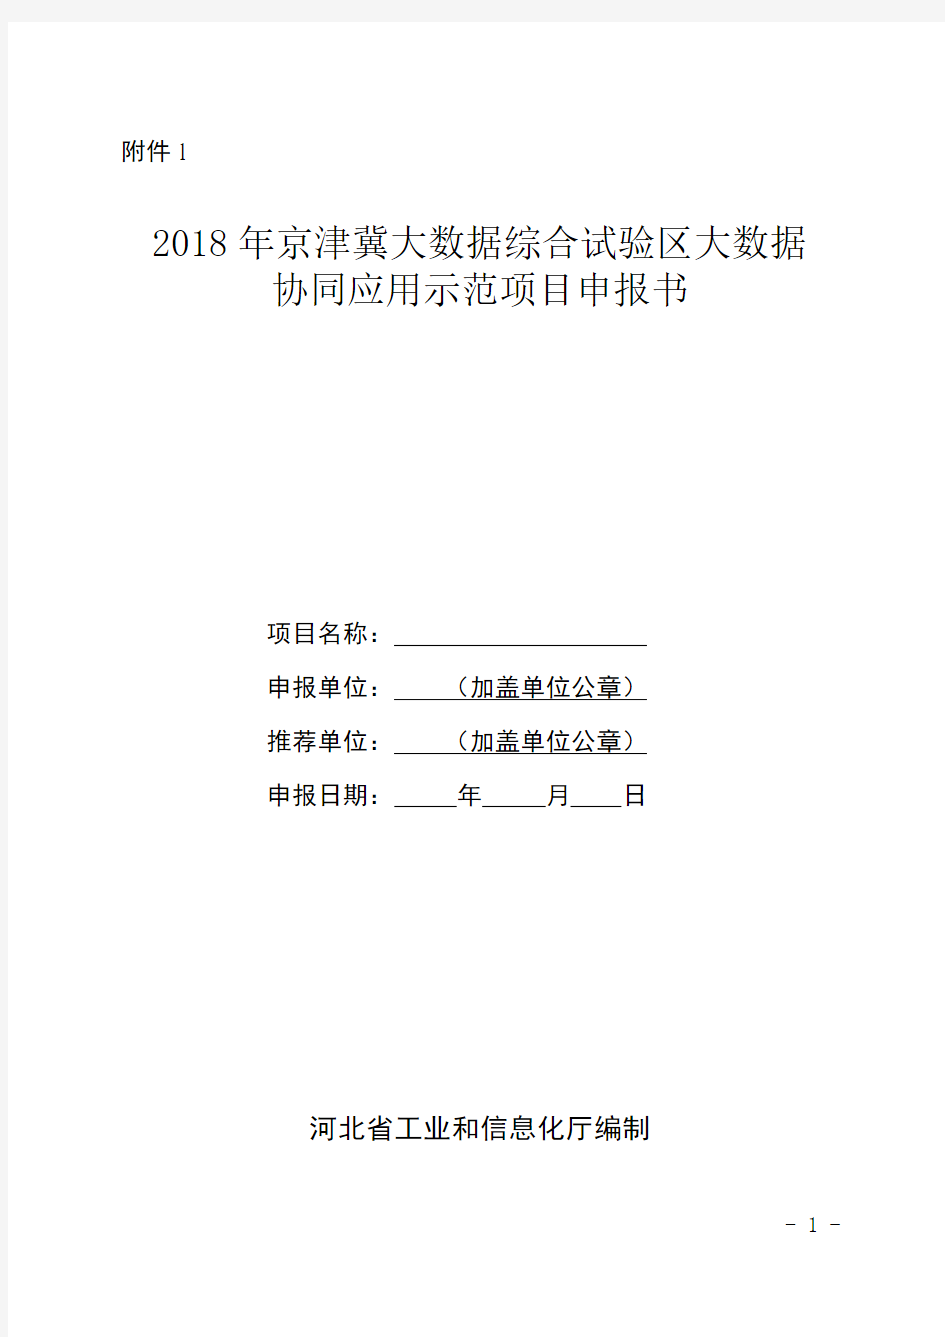 2018年京津冀大数据综合试验区大数据协同应用示范项目申报